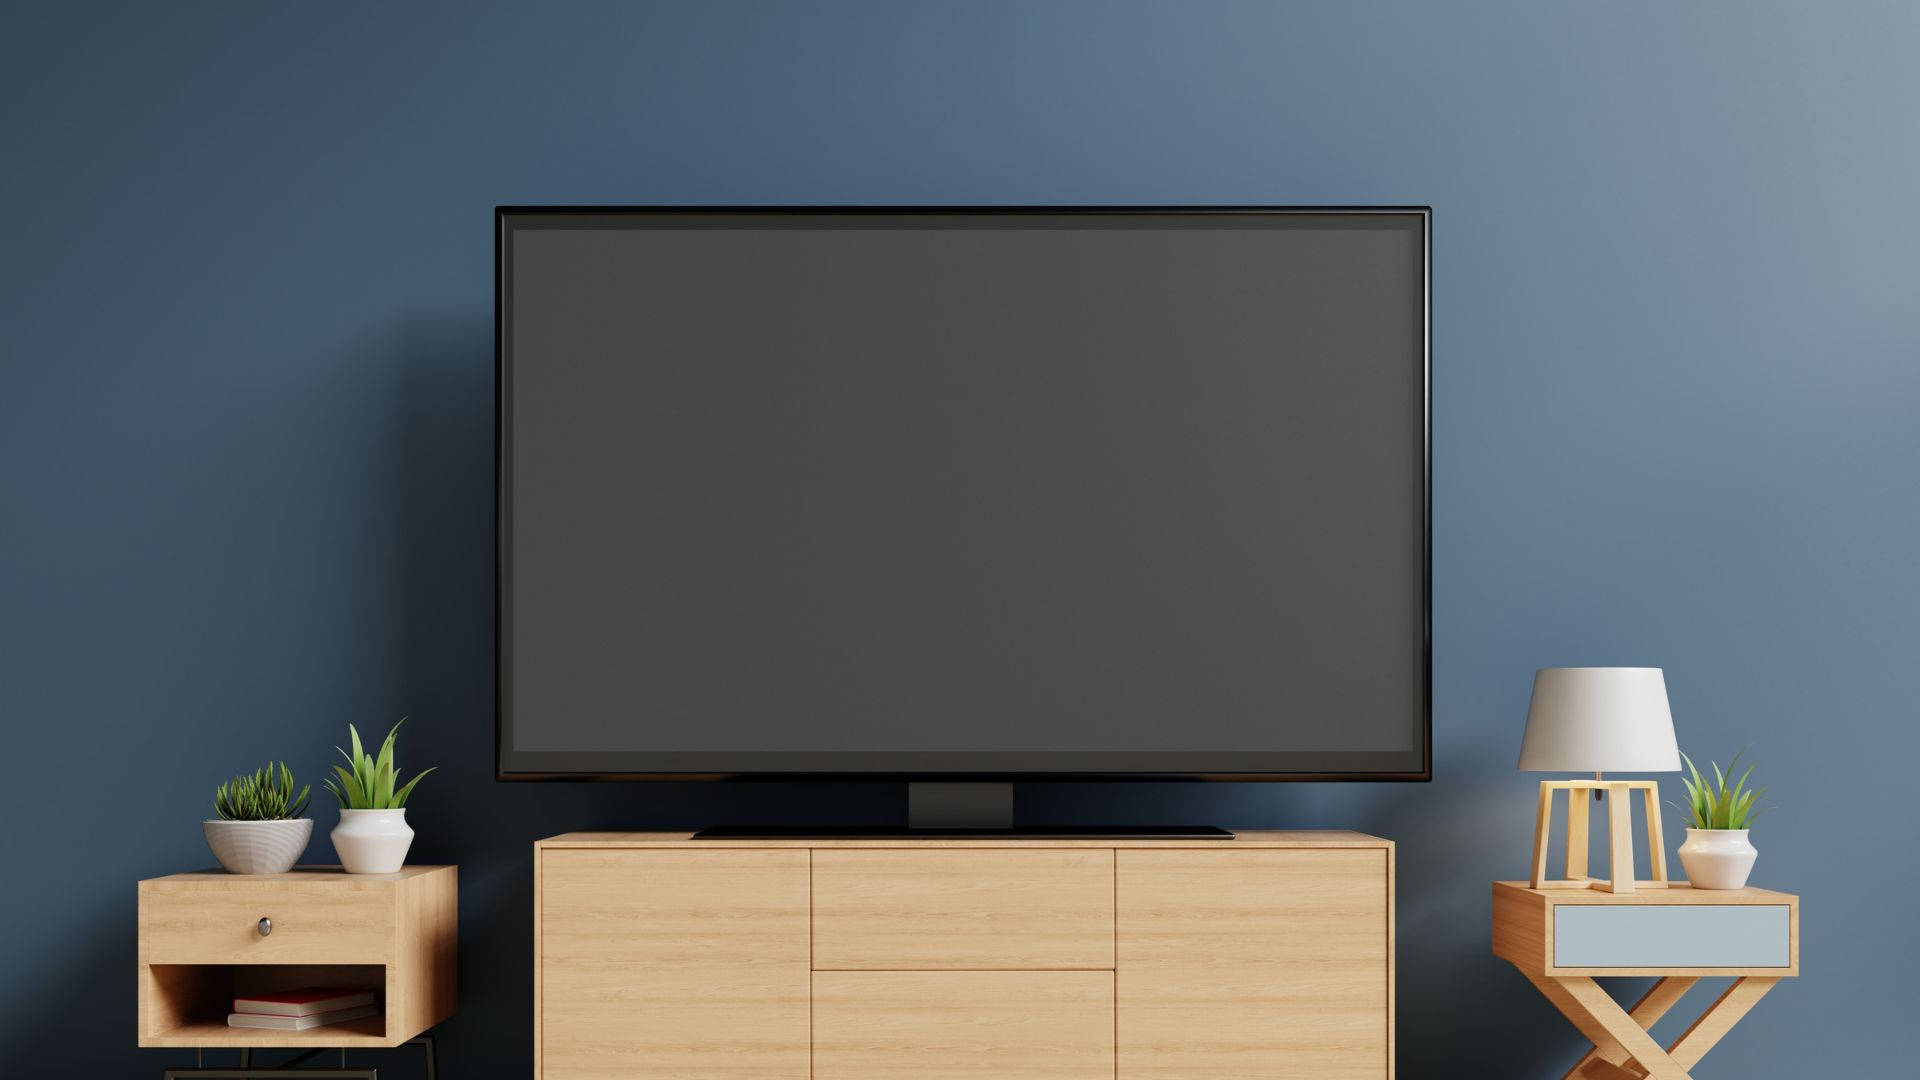 Smart Tv Aesthetic Design Wallpaper